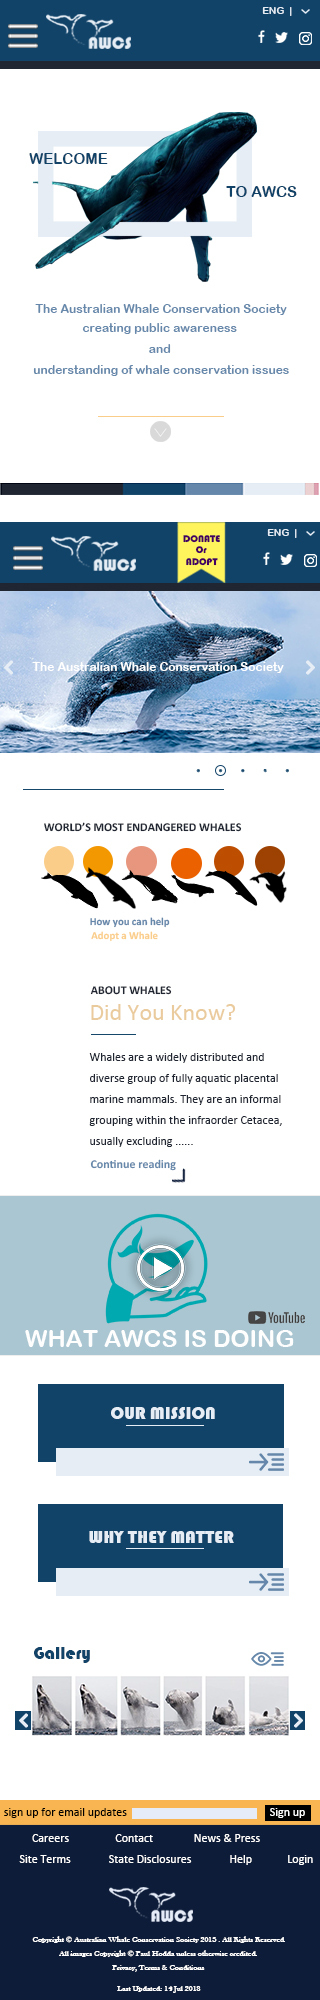 鲸鱼保护协会网站logo redesign图1